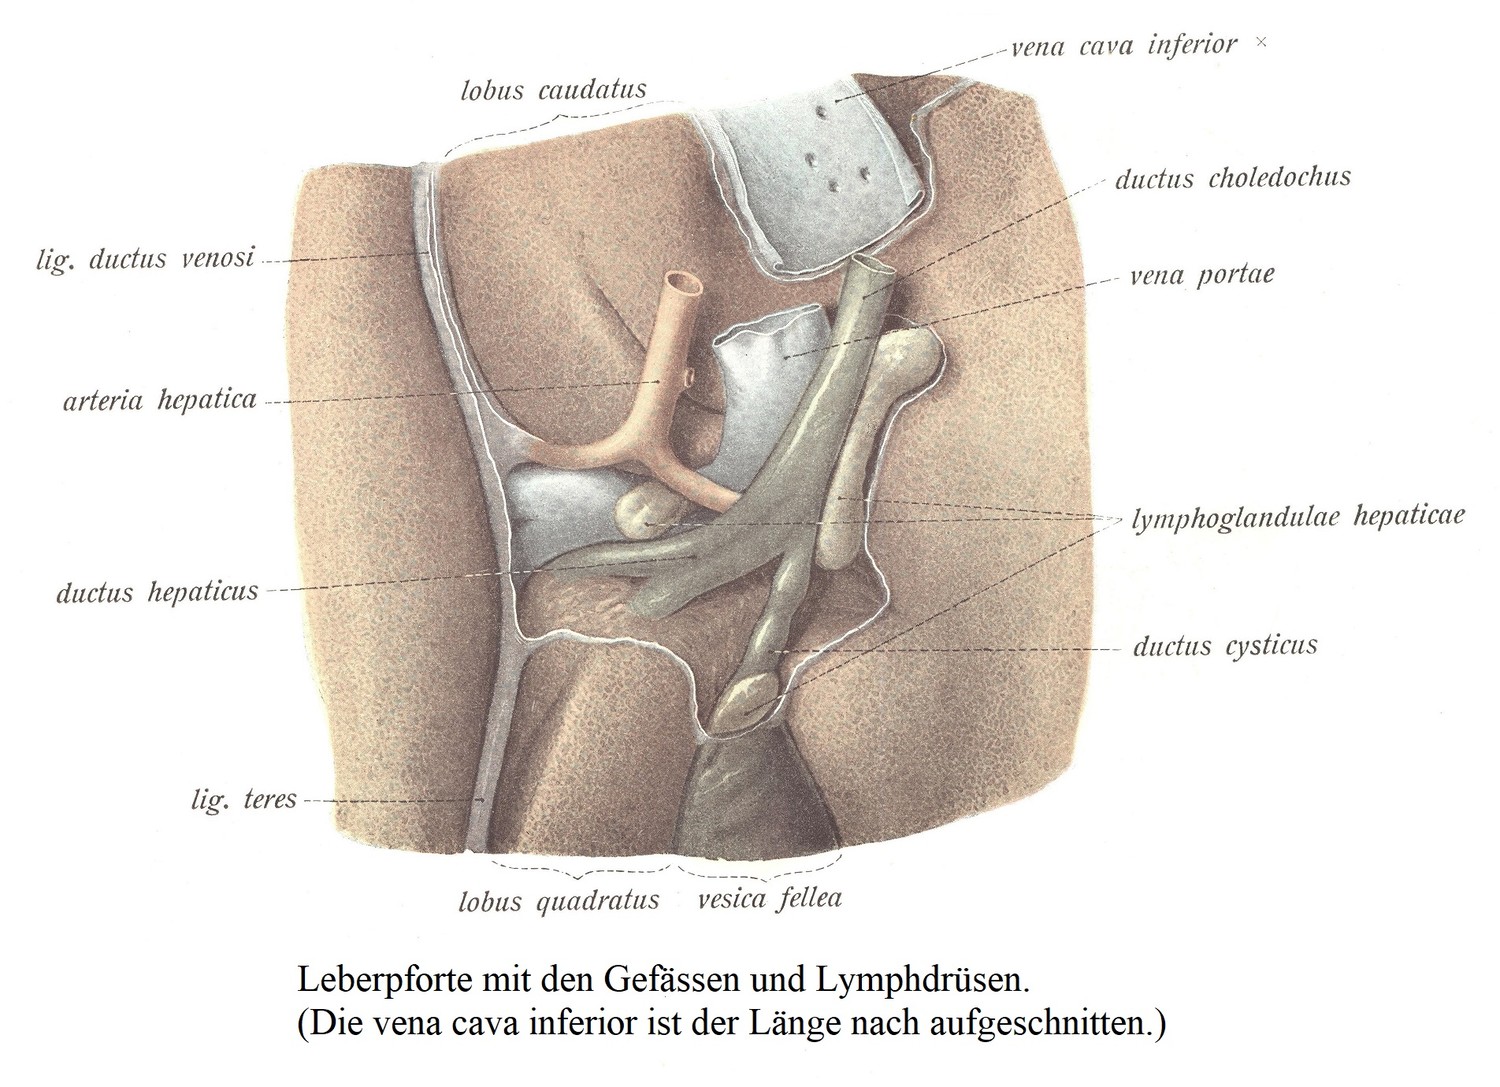 Leberpforte mit den Gefässen und Lymphdrüsen. (Die vena cava inferior ist der Länge nach aufgeschnitten.)